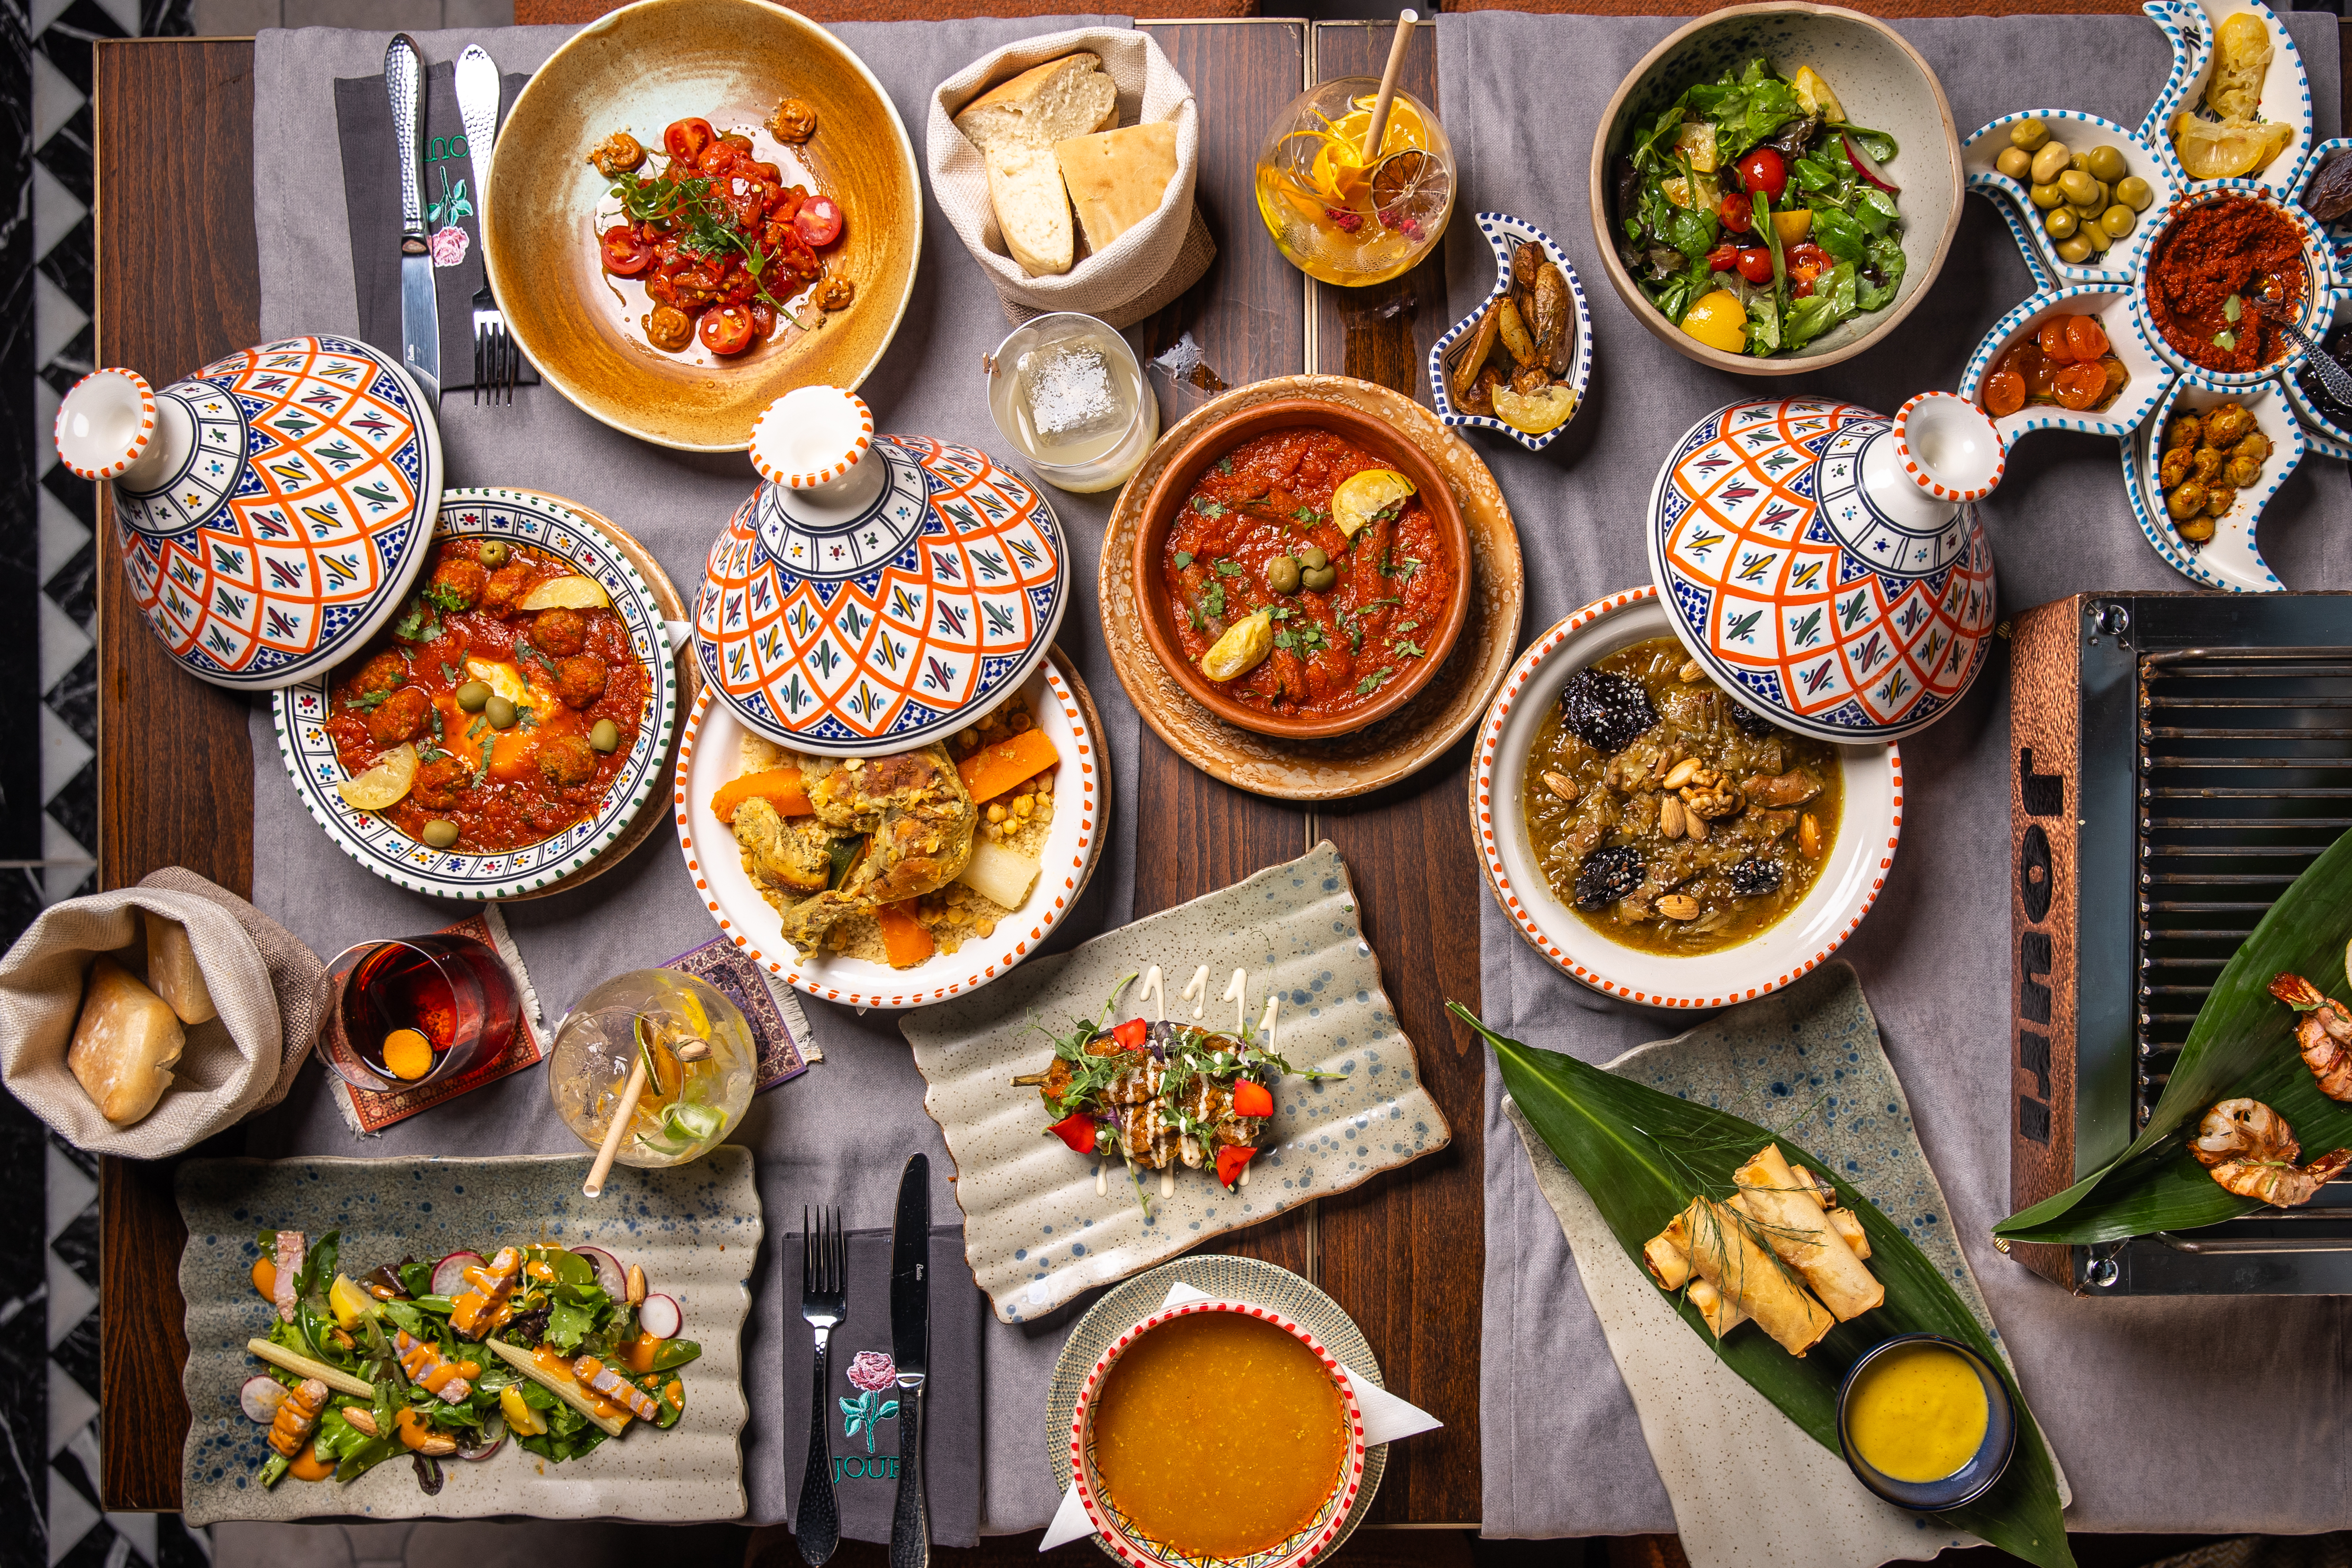 Marokkói étteremmel erősít a Byblos tulajdonosa – Megnyitott a Jouri